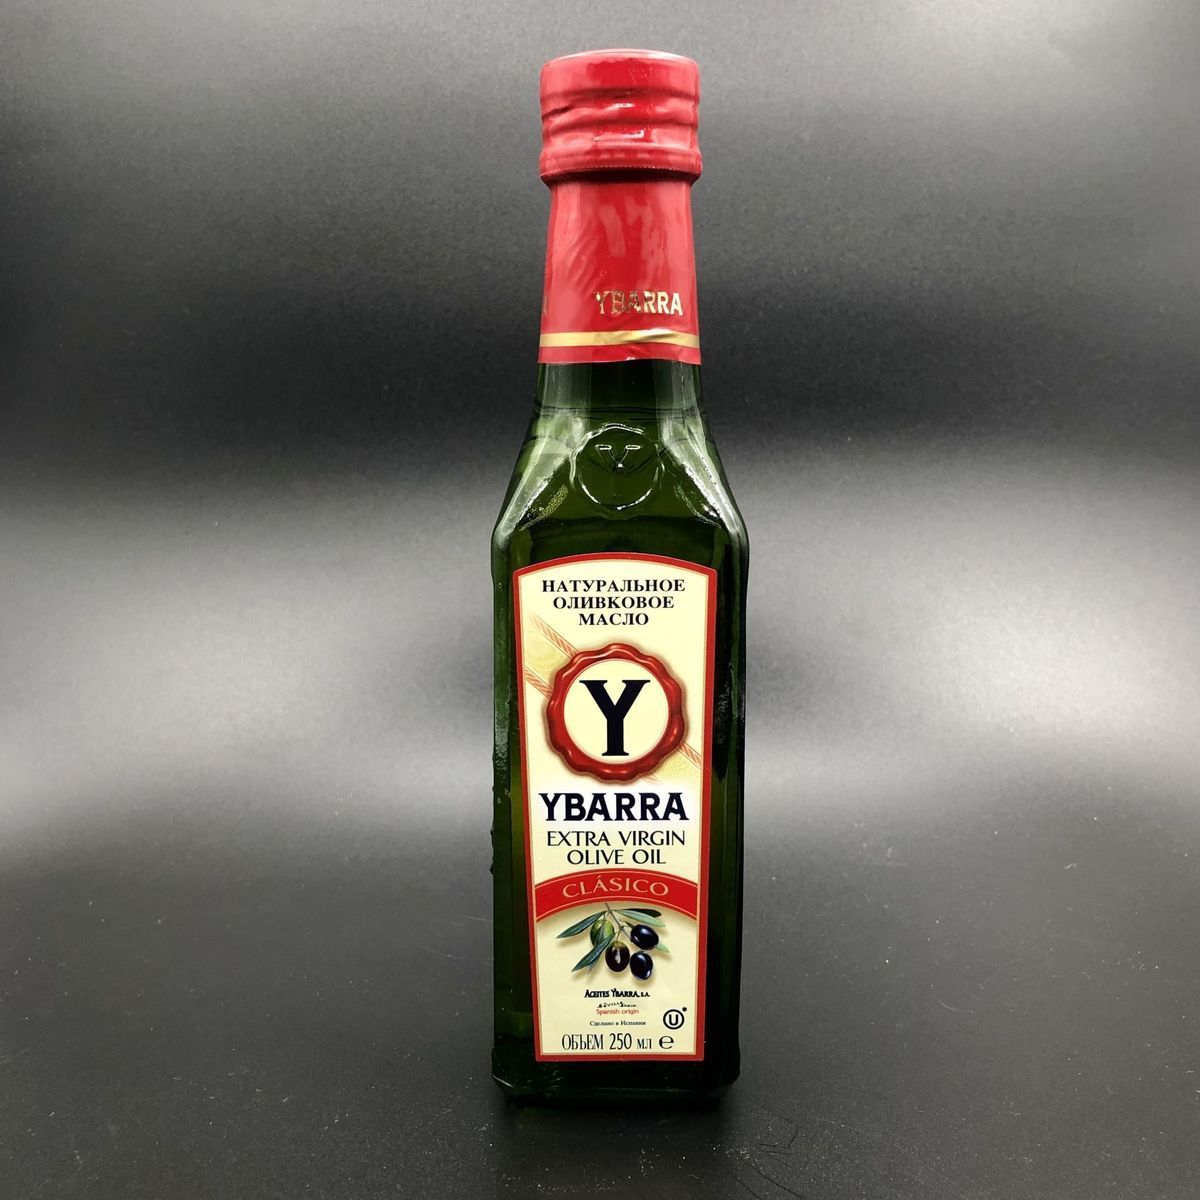 Оливковое масло Extra Virgin Clasico 250 мл, Ybarra